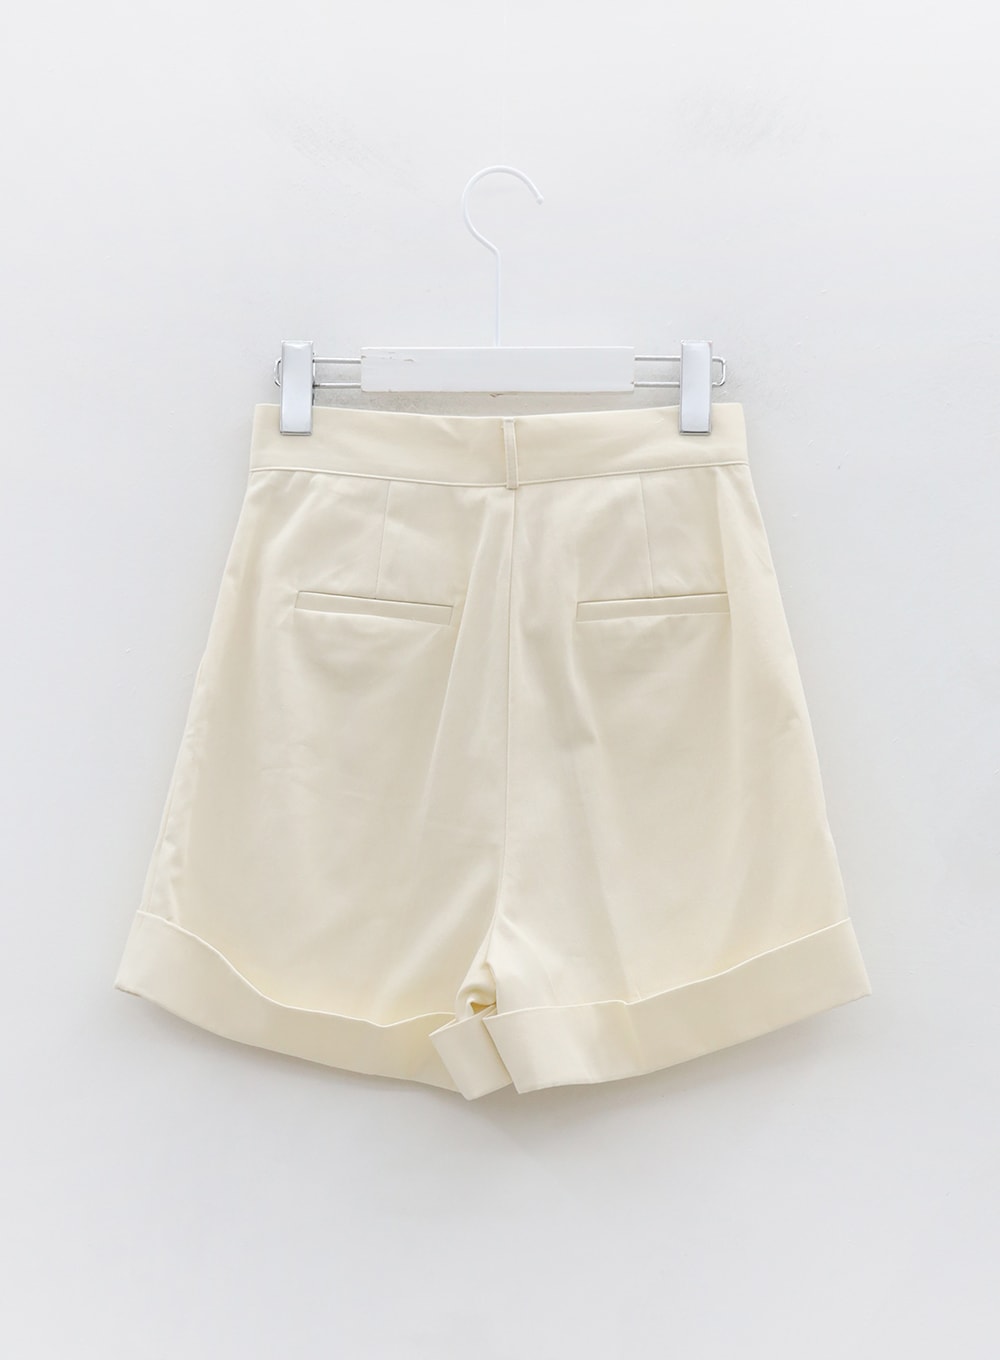 Pintuck Color Cotton Half Pants OG09